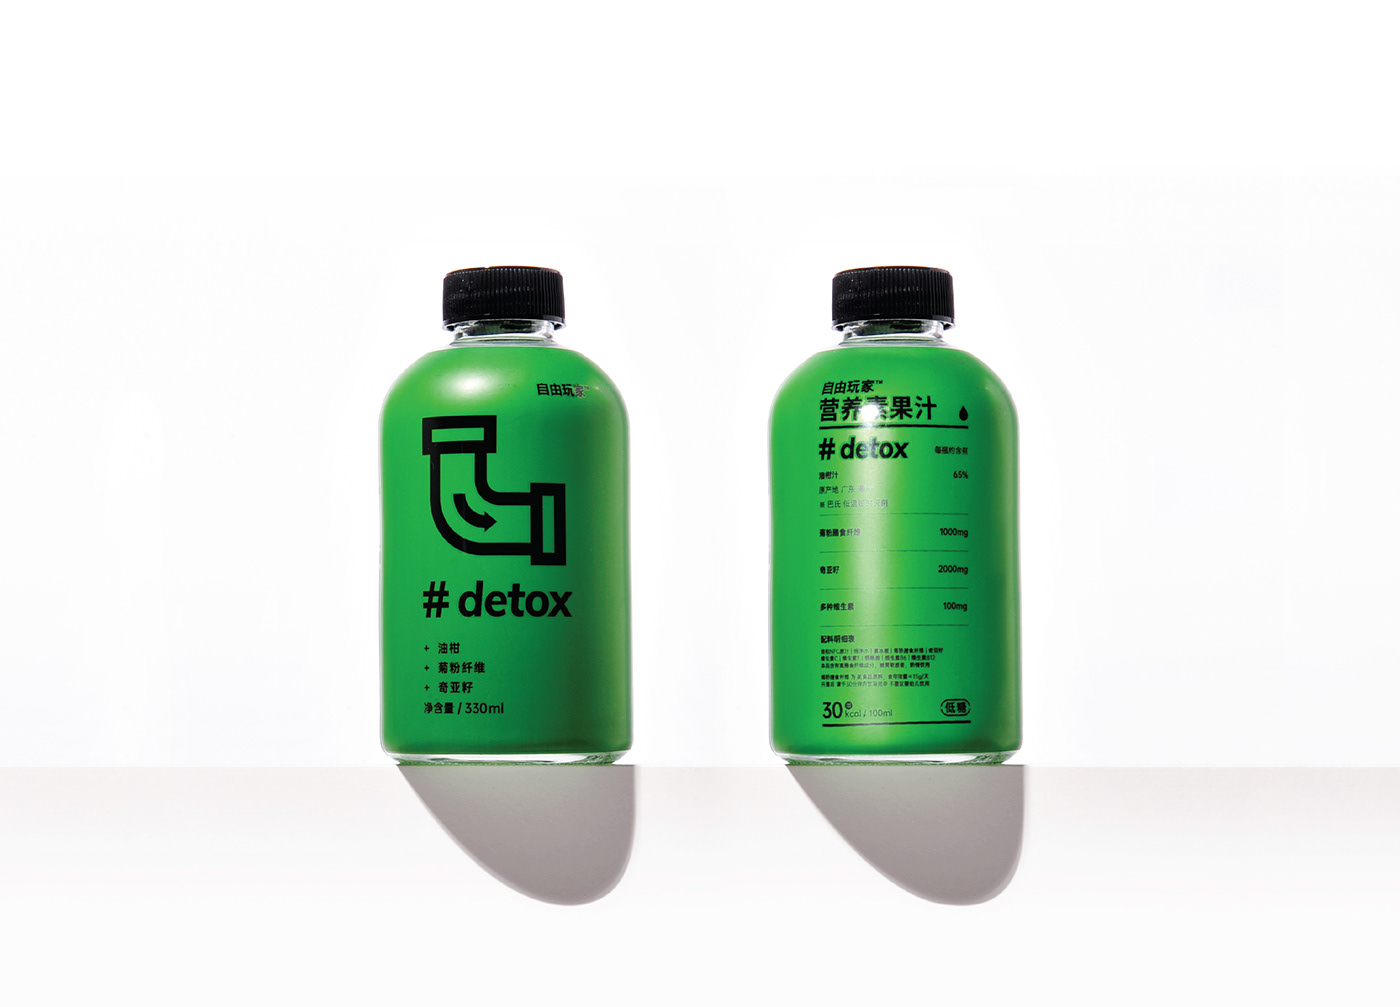 brand branding  logo Packaging packaging design juice Juice Packaging Coffee energy